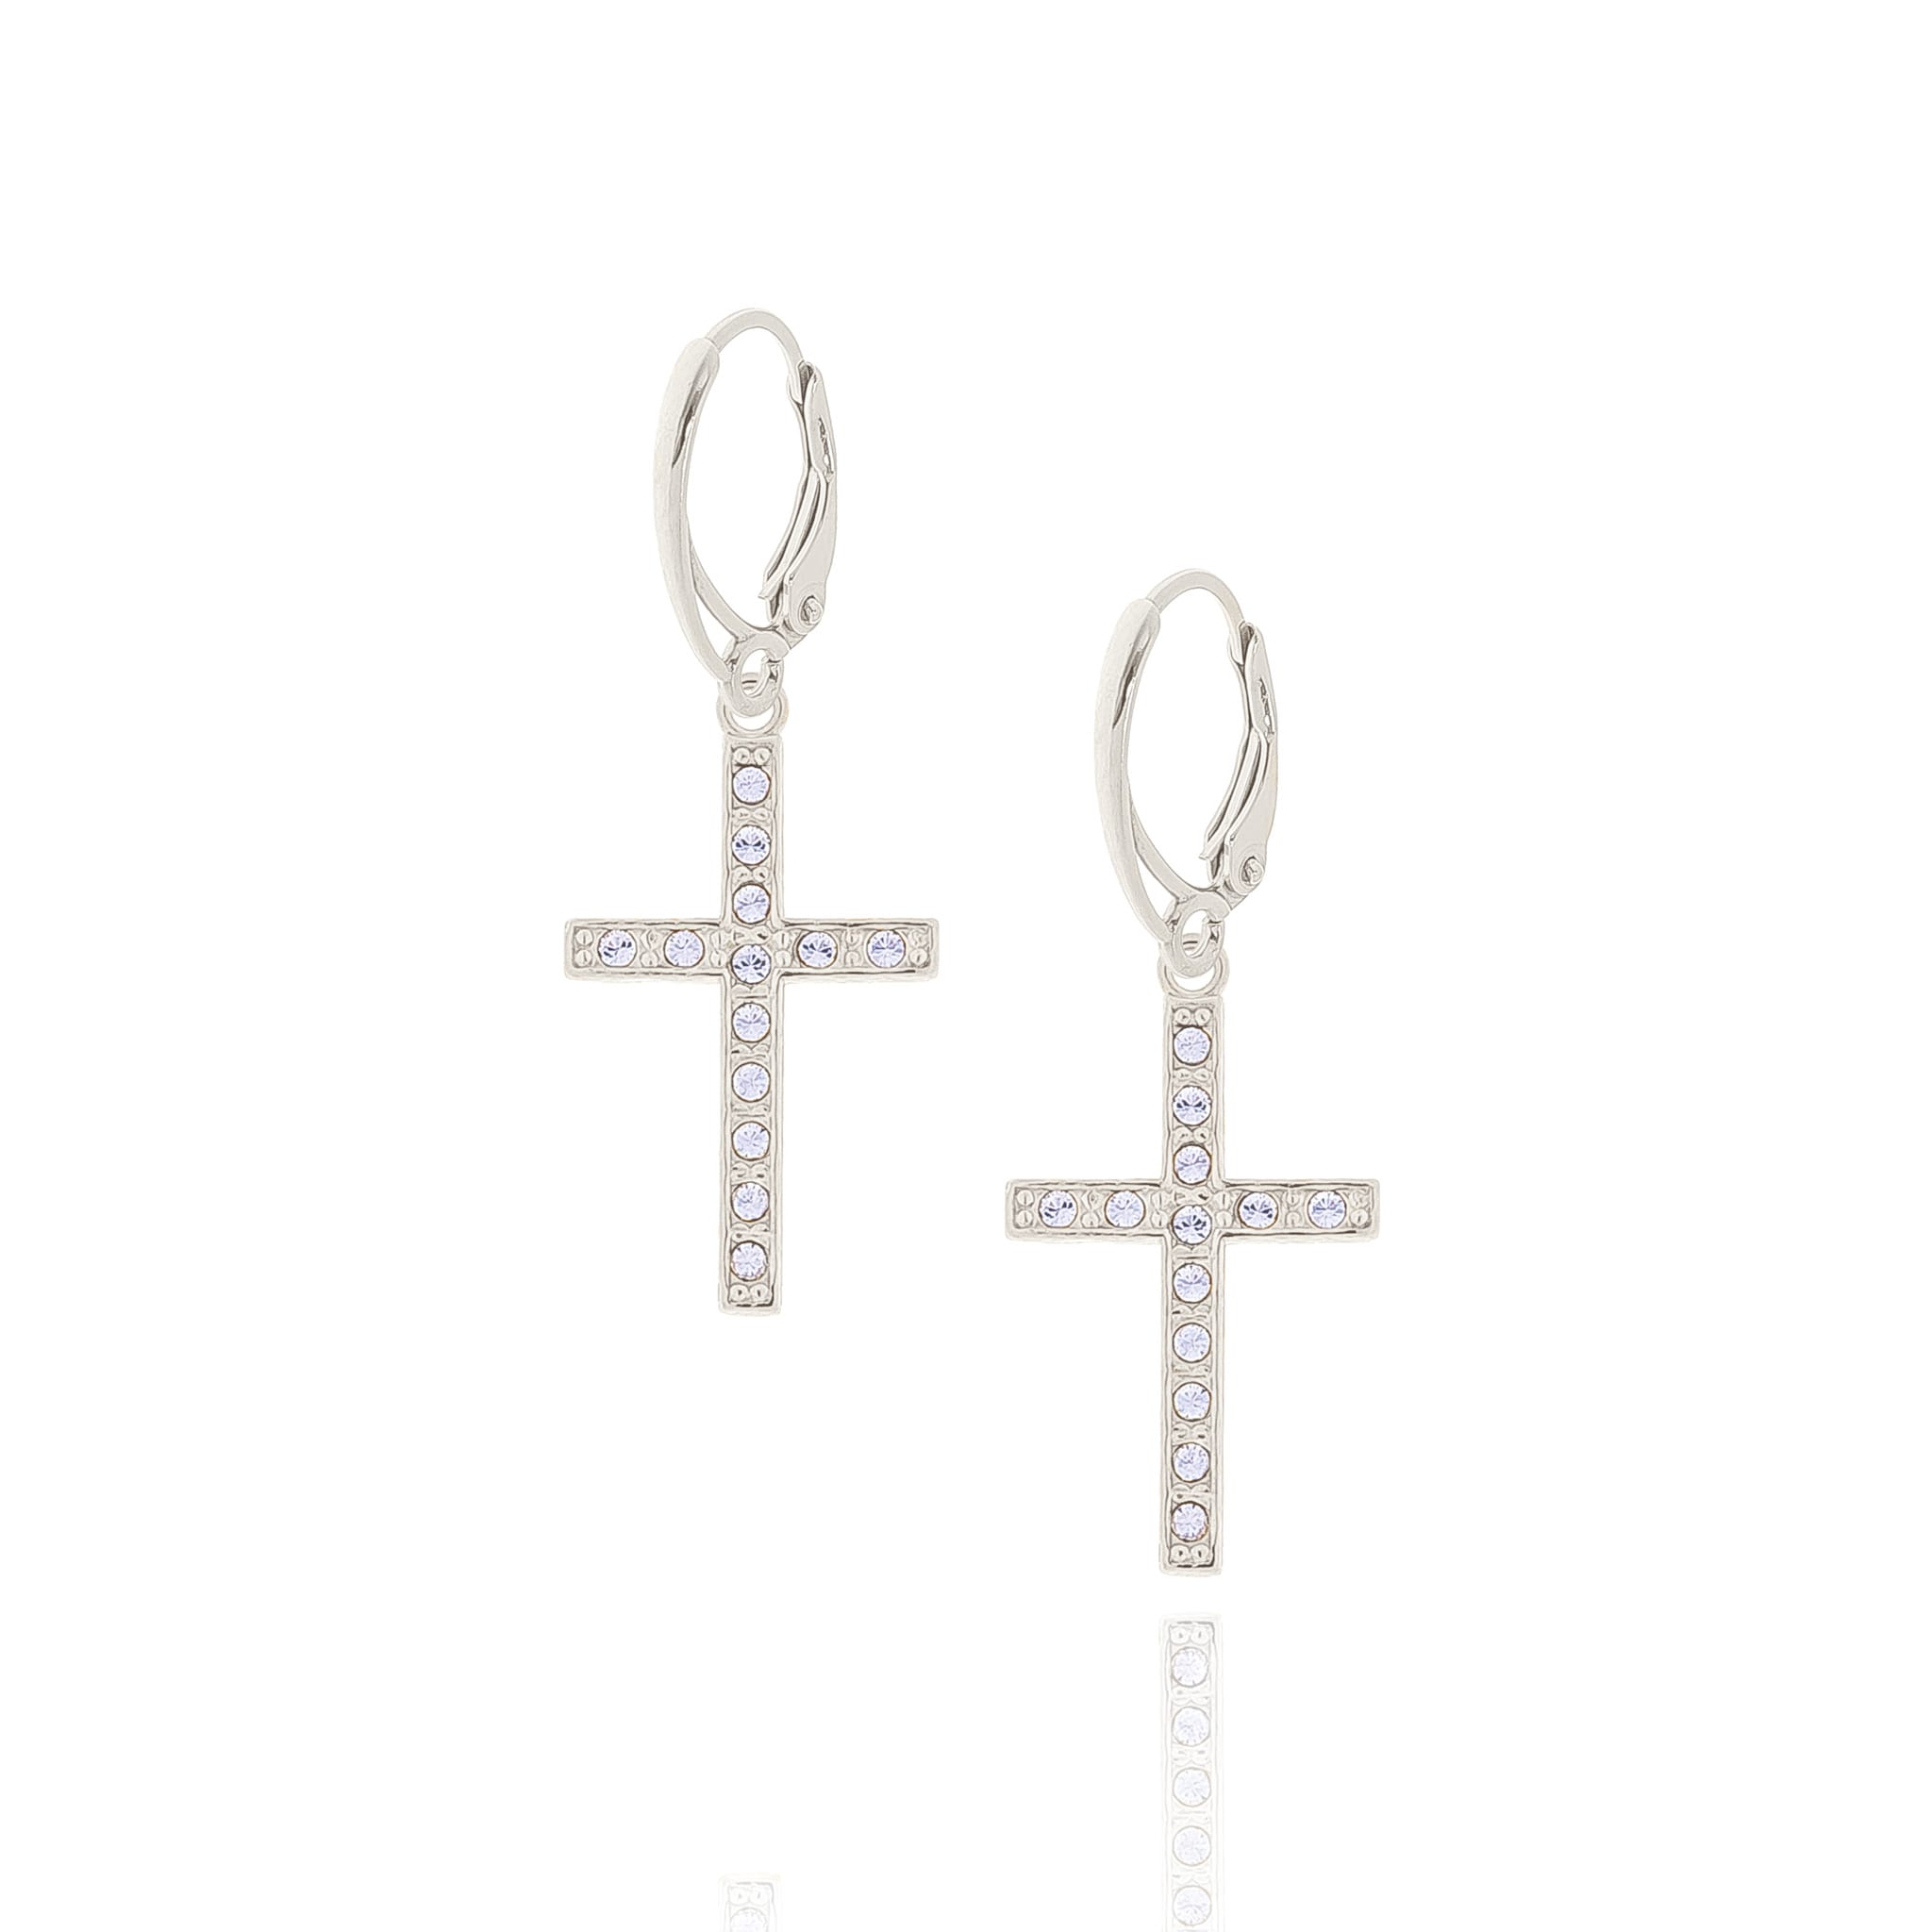 Kolczyki srebrne z krzyżami wysadzanymi kryształkami Preciosa